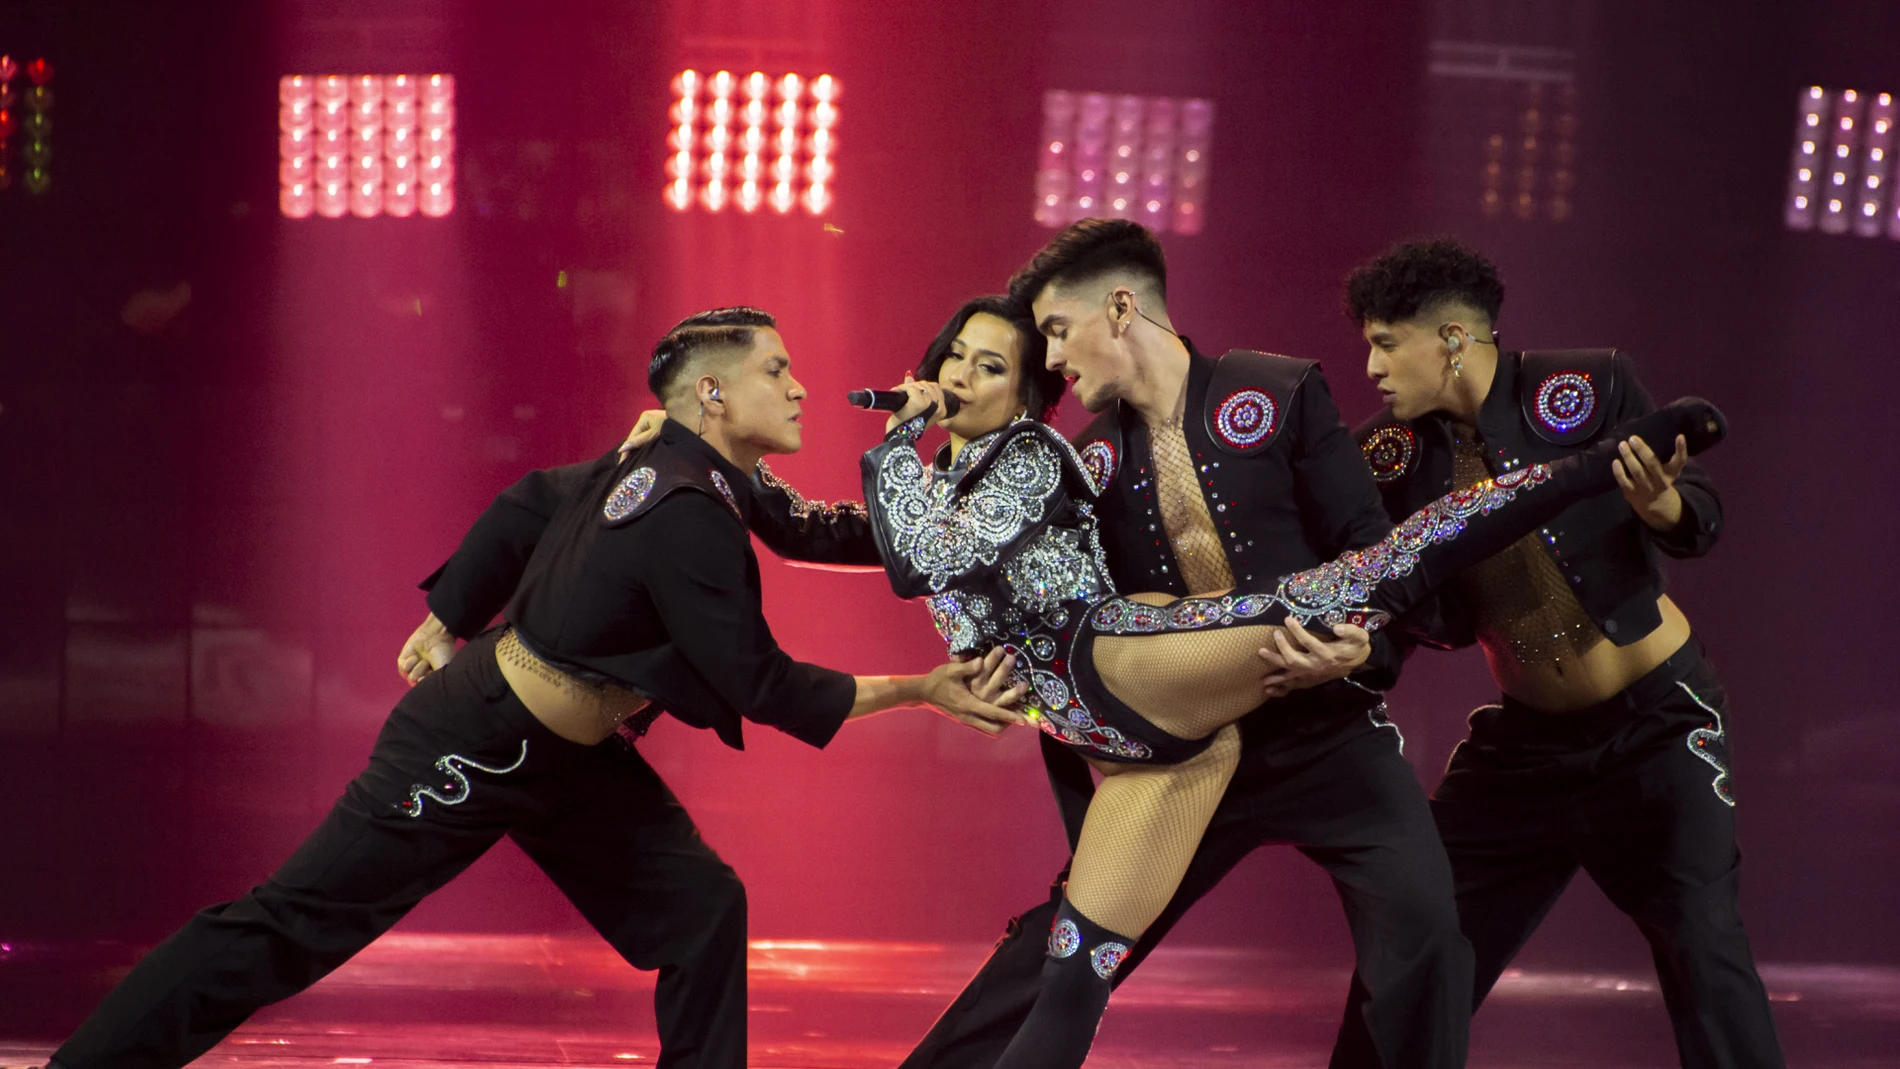 La actuación de Chanel en Eurovisión consigue un millón de visualizaciones en menos de 24 horas 